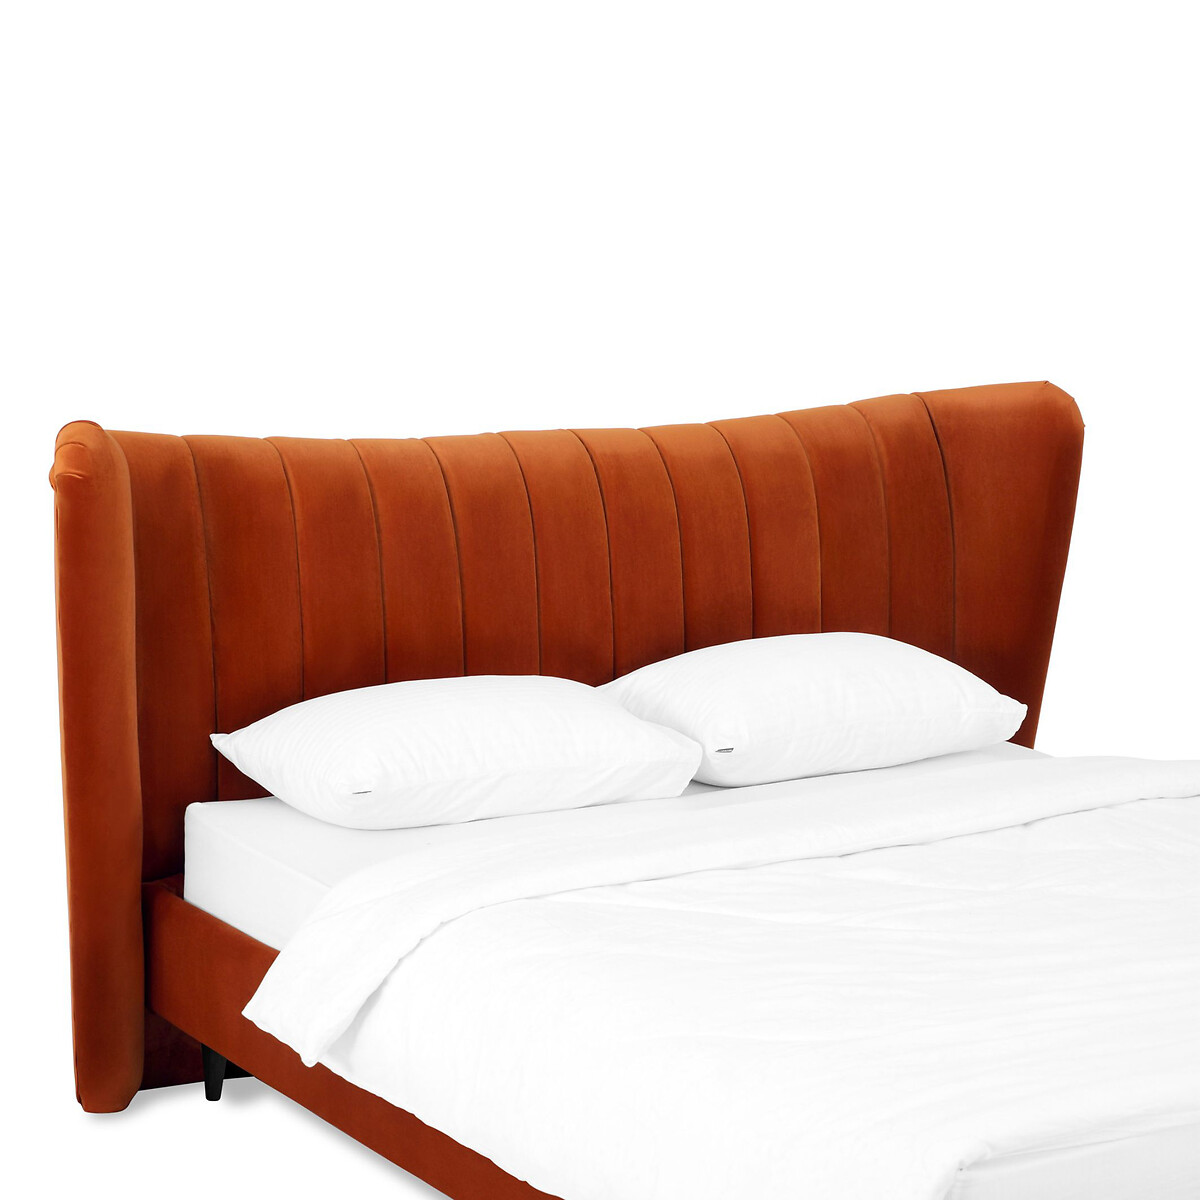 Кровать Queen II Agata L 160 x 200 см оранжевый LaRedoute, размер 160 x 200 см - фото 4